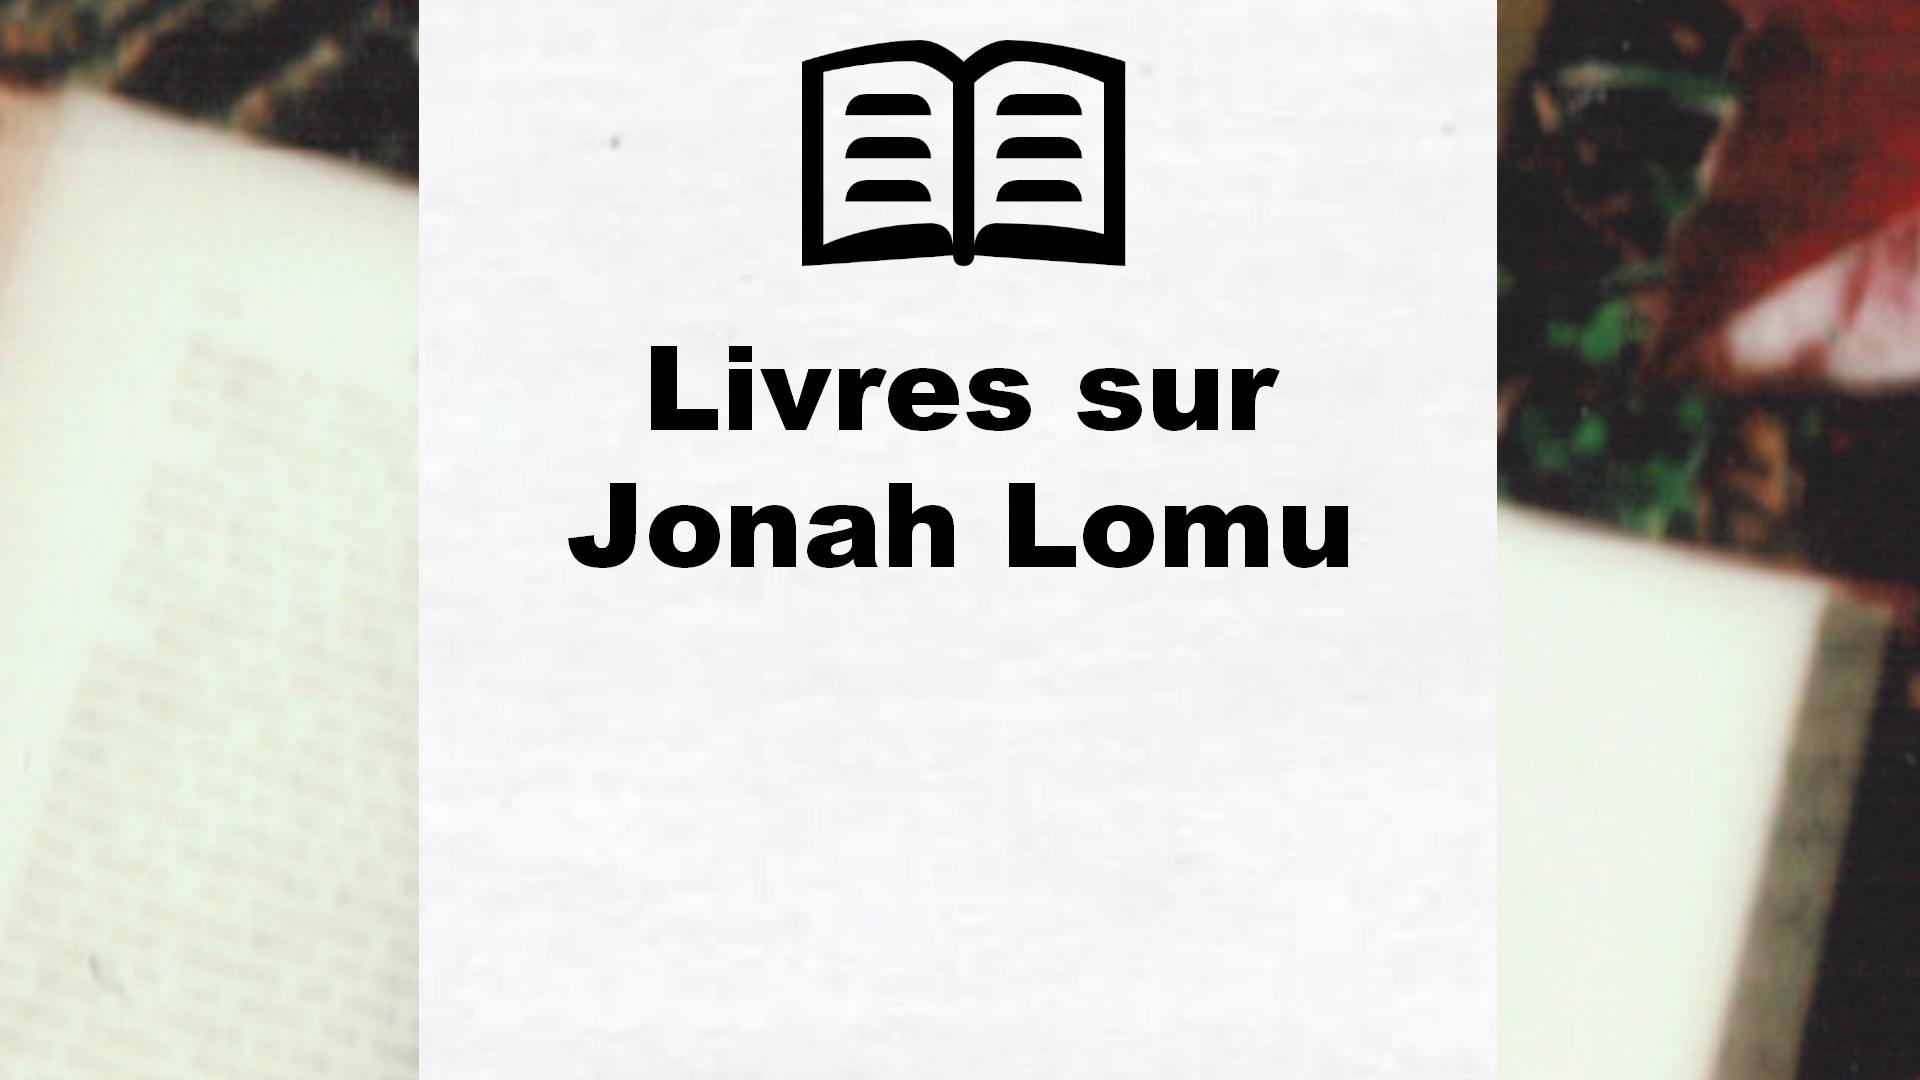 Livres sur Jonah Lomu